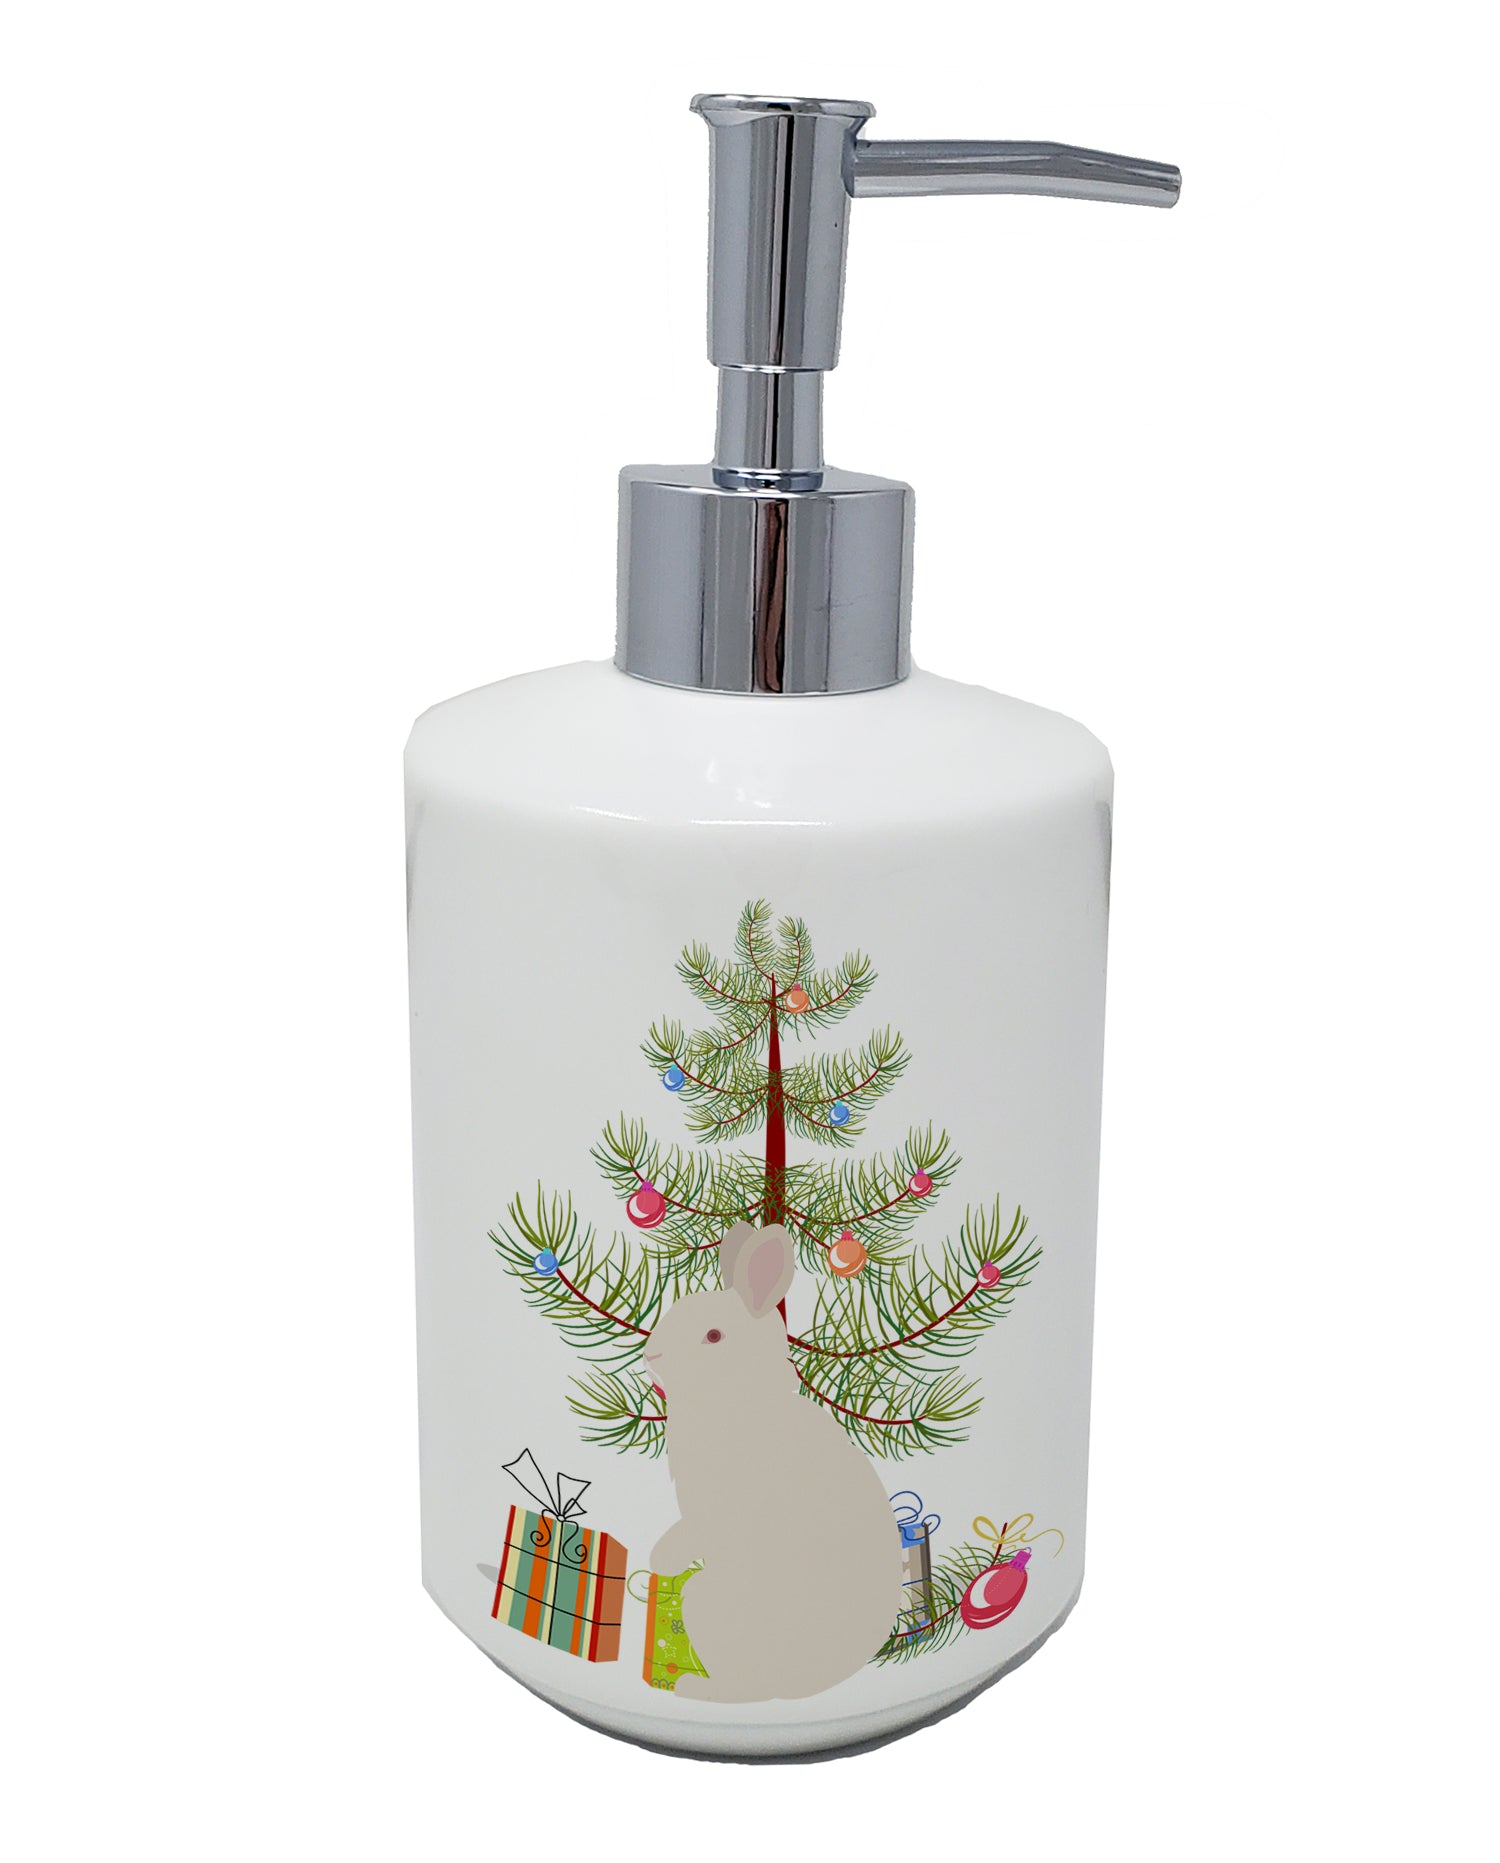 Buy this New Zealand White Rabbit Christmas Ceramic Soap Dispenser